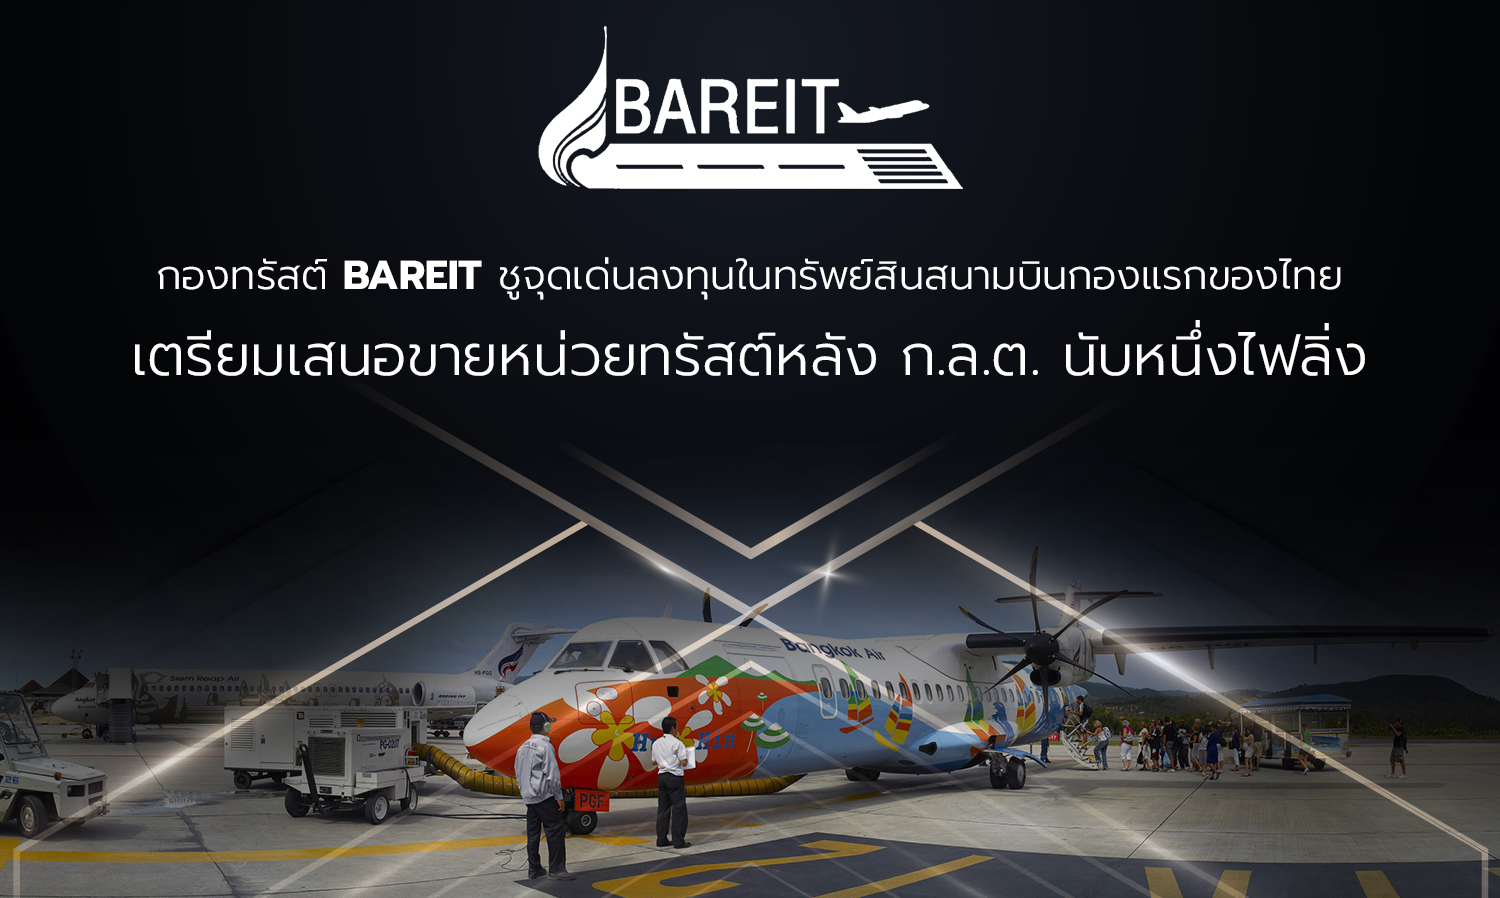 กองทรัสต์ BAREIT ชูจุดเด่นลงทุนในทรัพย์สินสนามบินกองแรกของไทย เตรียมเสนอขายหน่วยทรัสต์หลัง ก.ล.ต. นับหนึ่งไฟลิ่ง